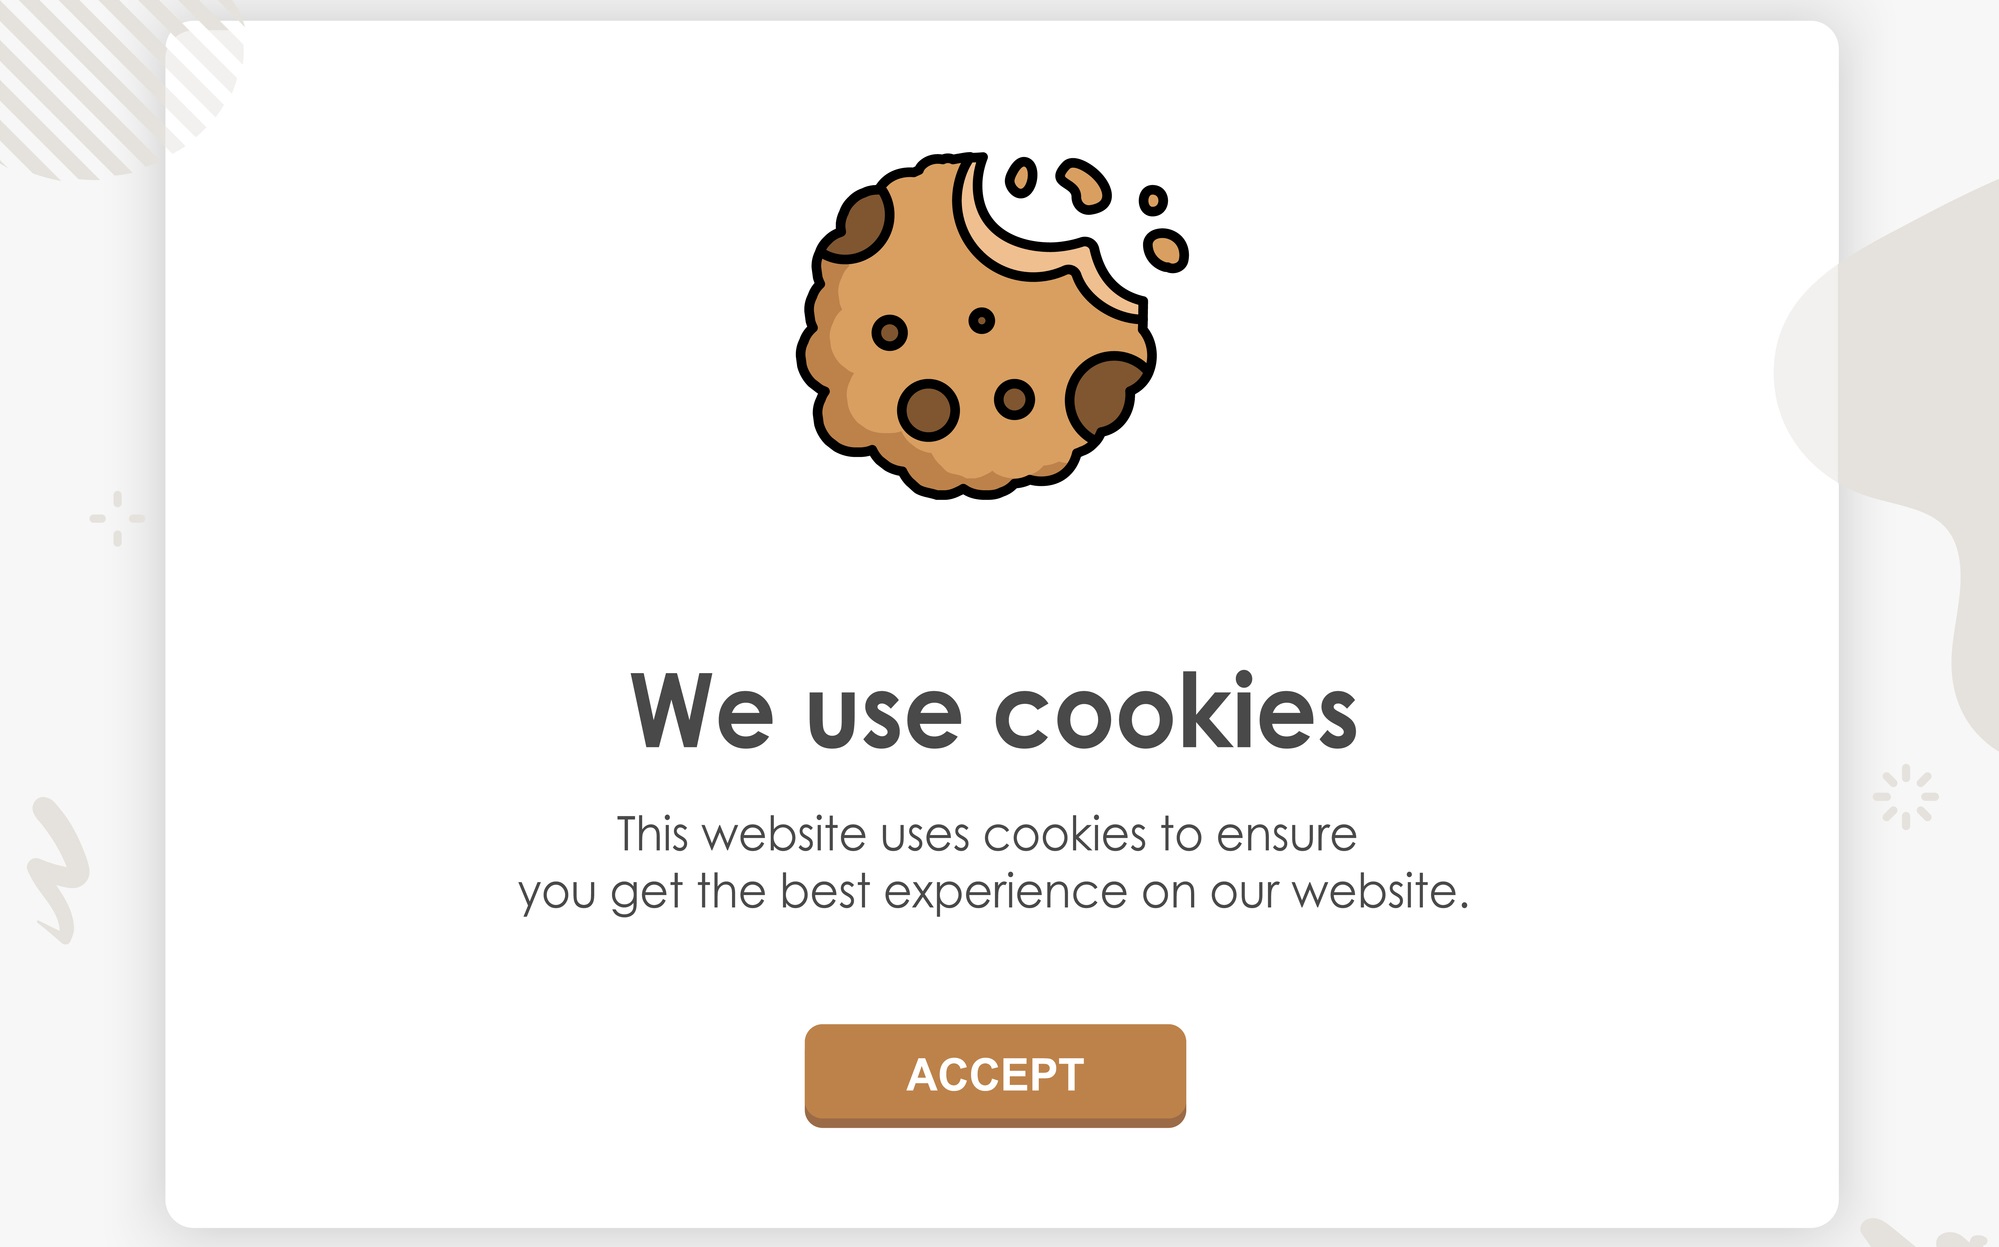 Datenschützer reicht weitere 226 Beschwerden gegen missbräuchliche Cookie-Banner ein